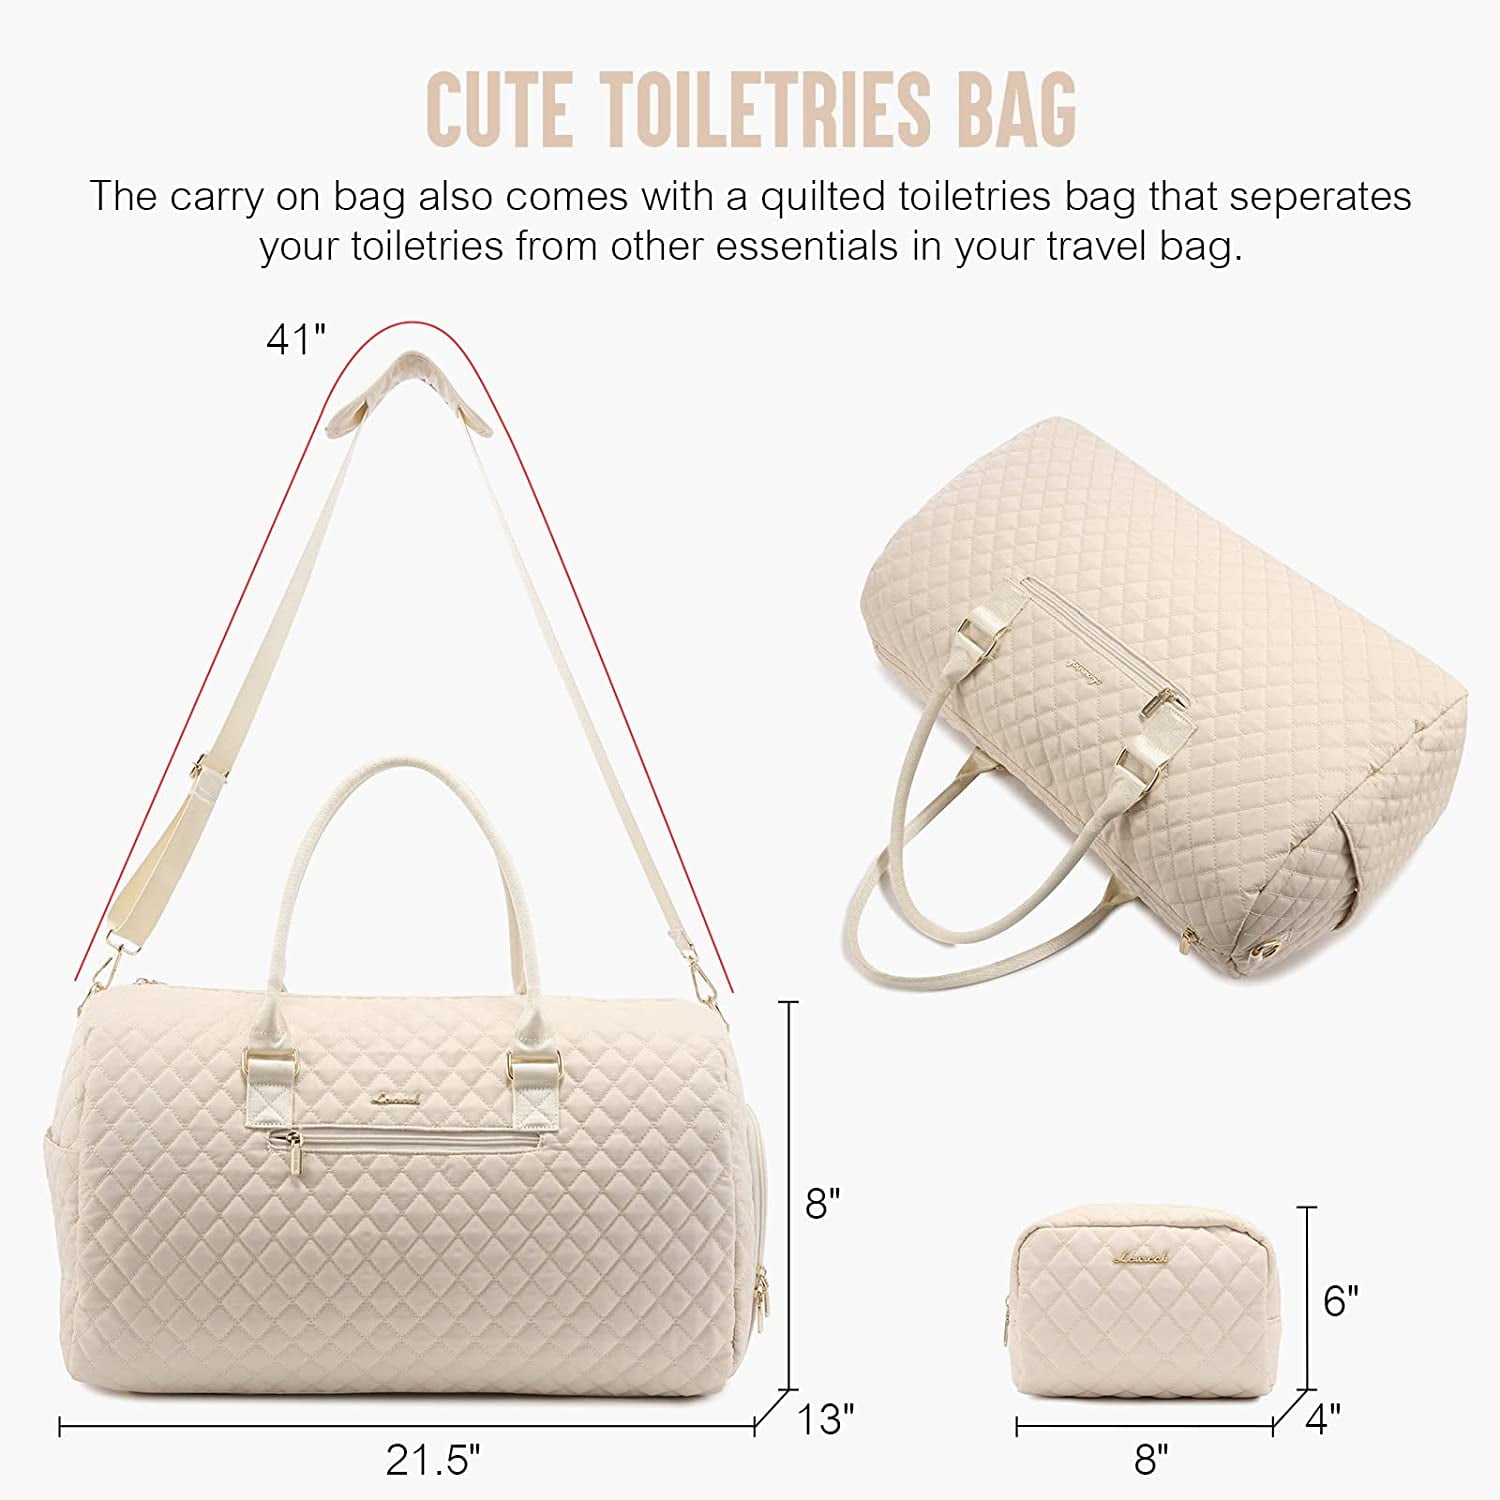 LOVEVOOK 2 Pcs Multifunction Weekender Bag, with Toiletry Bag – Lovevook